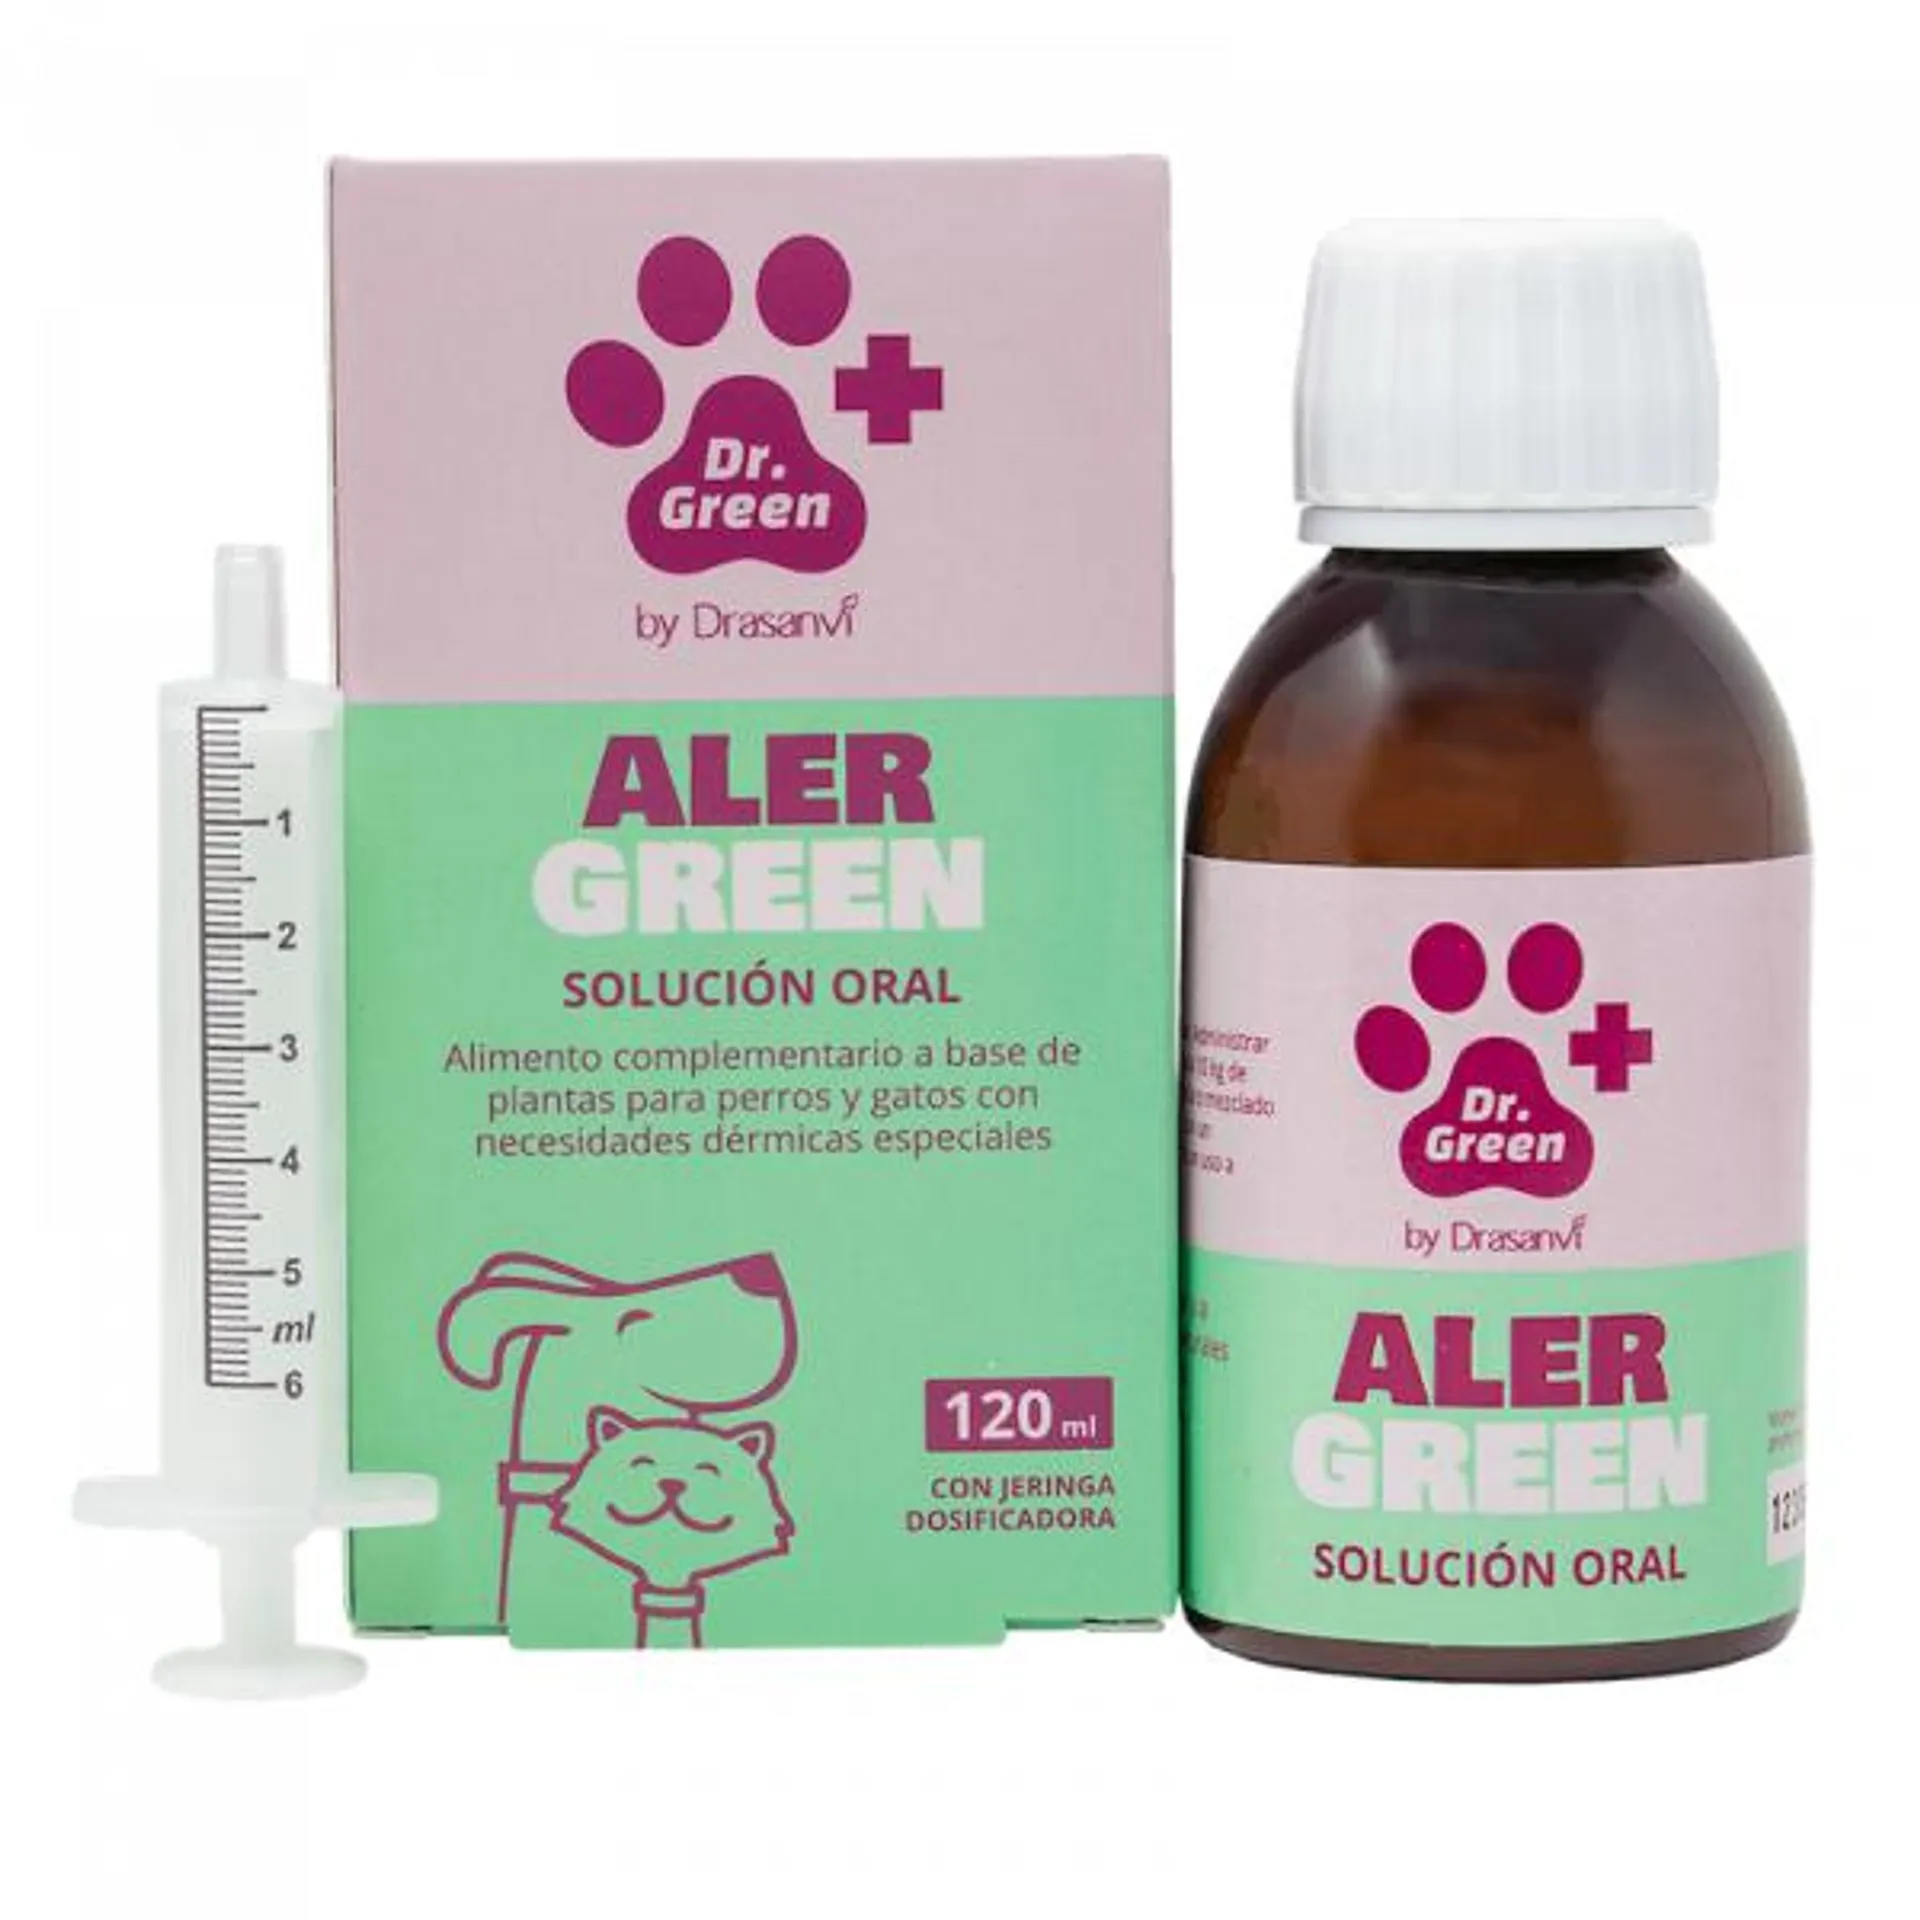 AlerGreen solución Oral- Dr Green